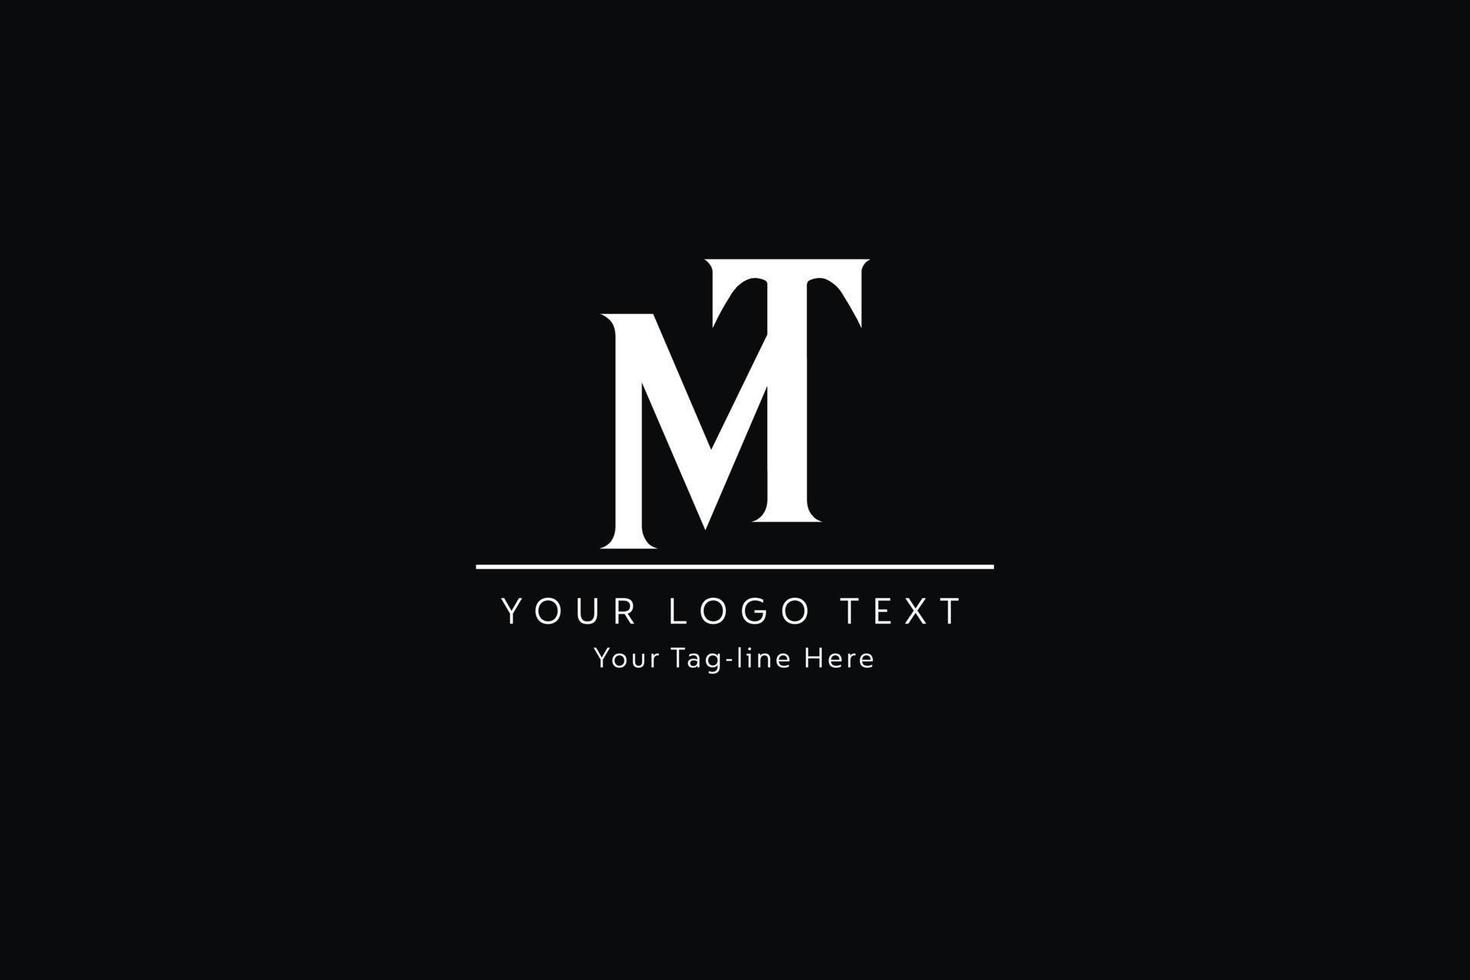 création de logo de lettre tm. illustration vectorielle d'icône de lettres tm modernes créatives. vecteur